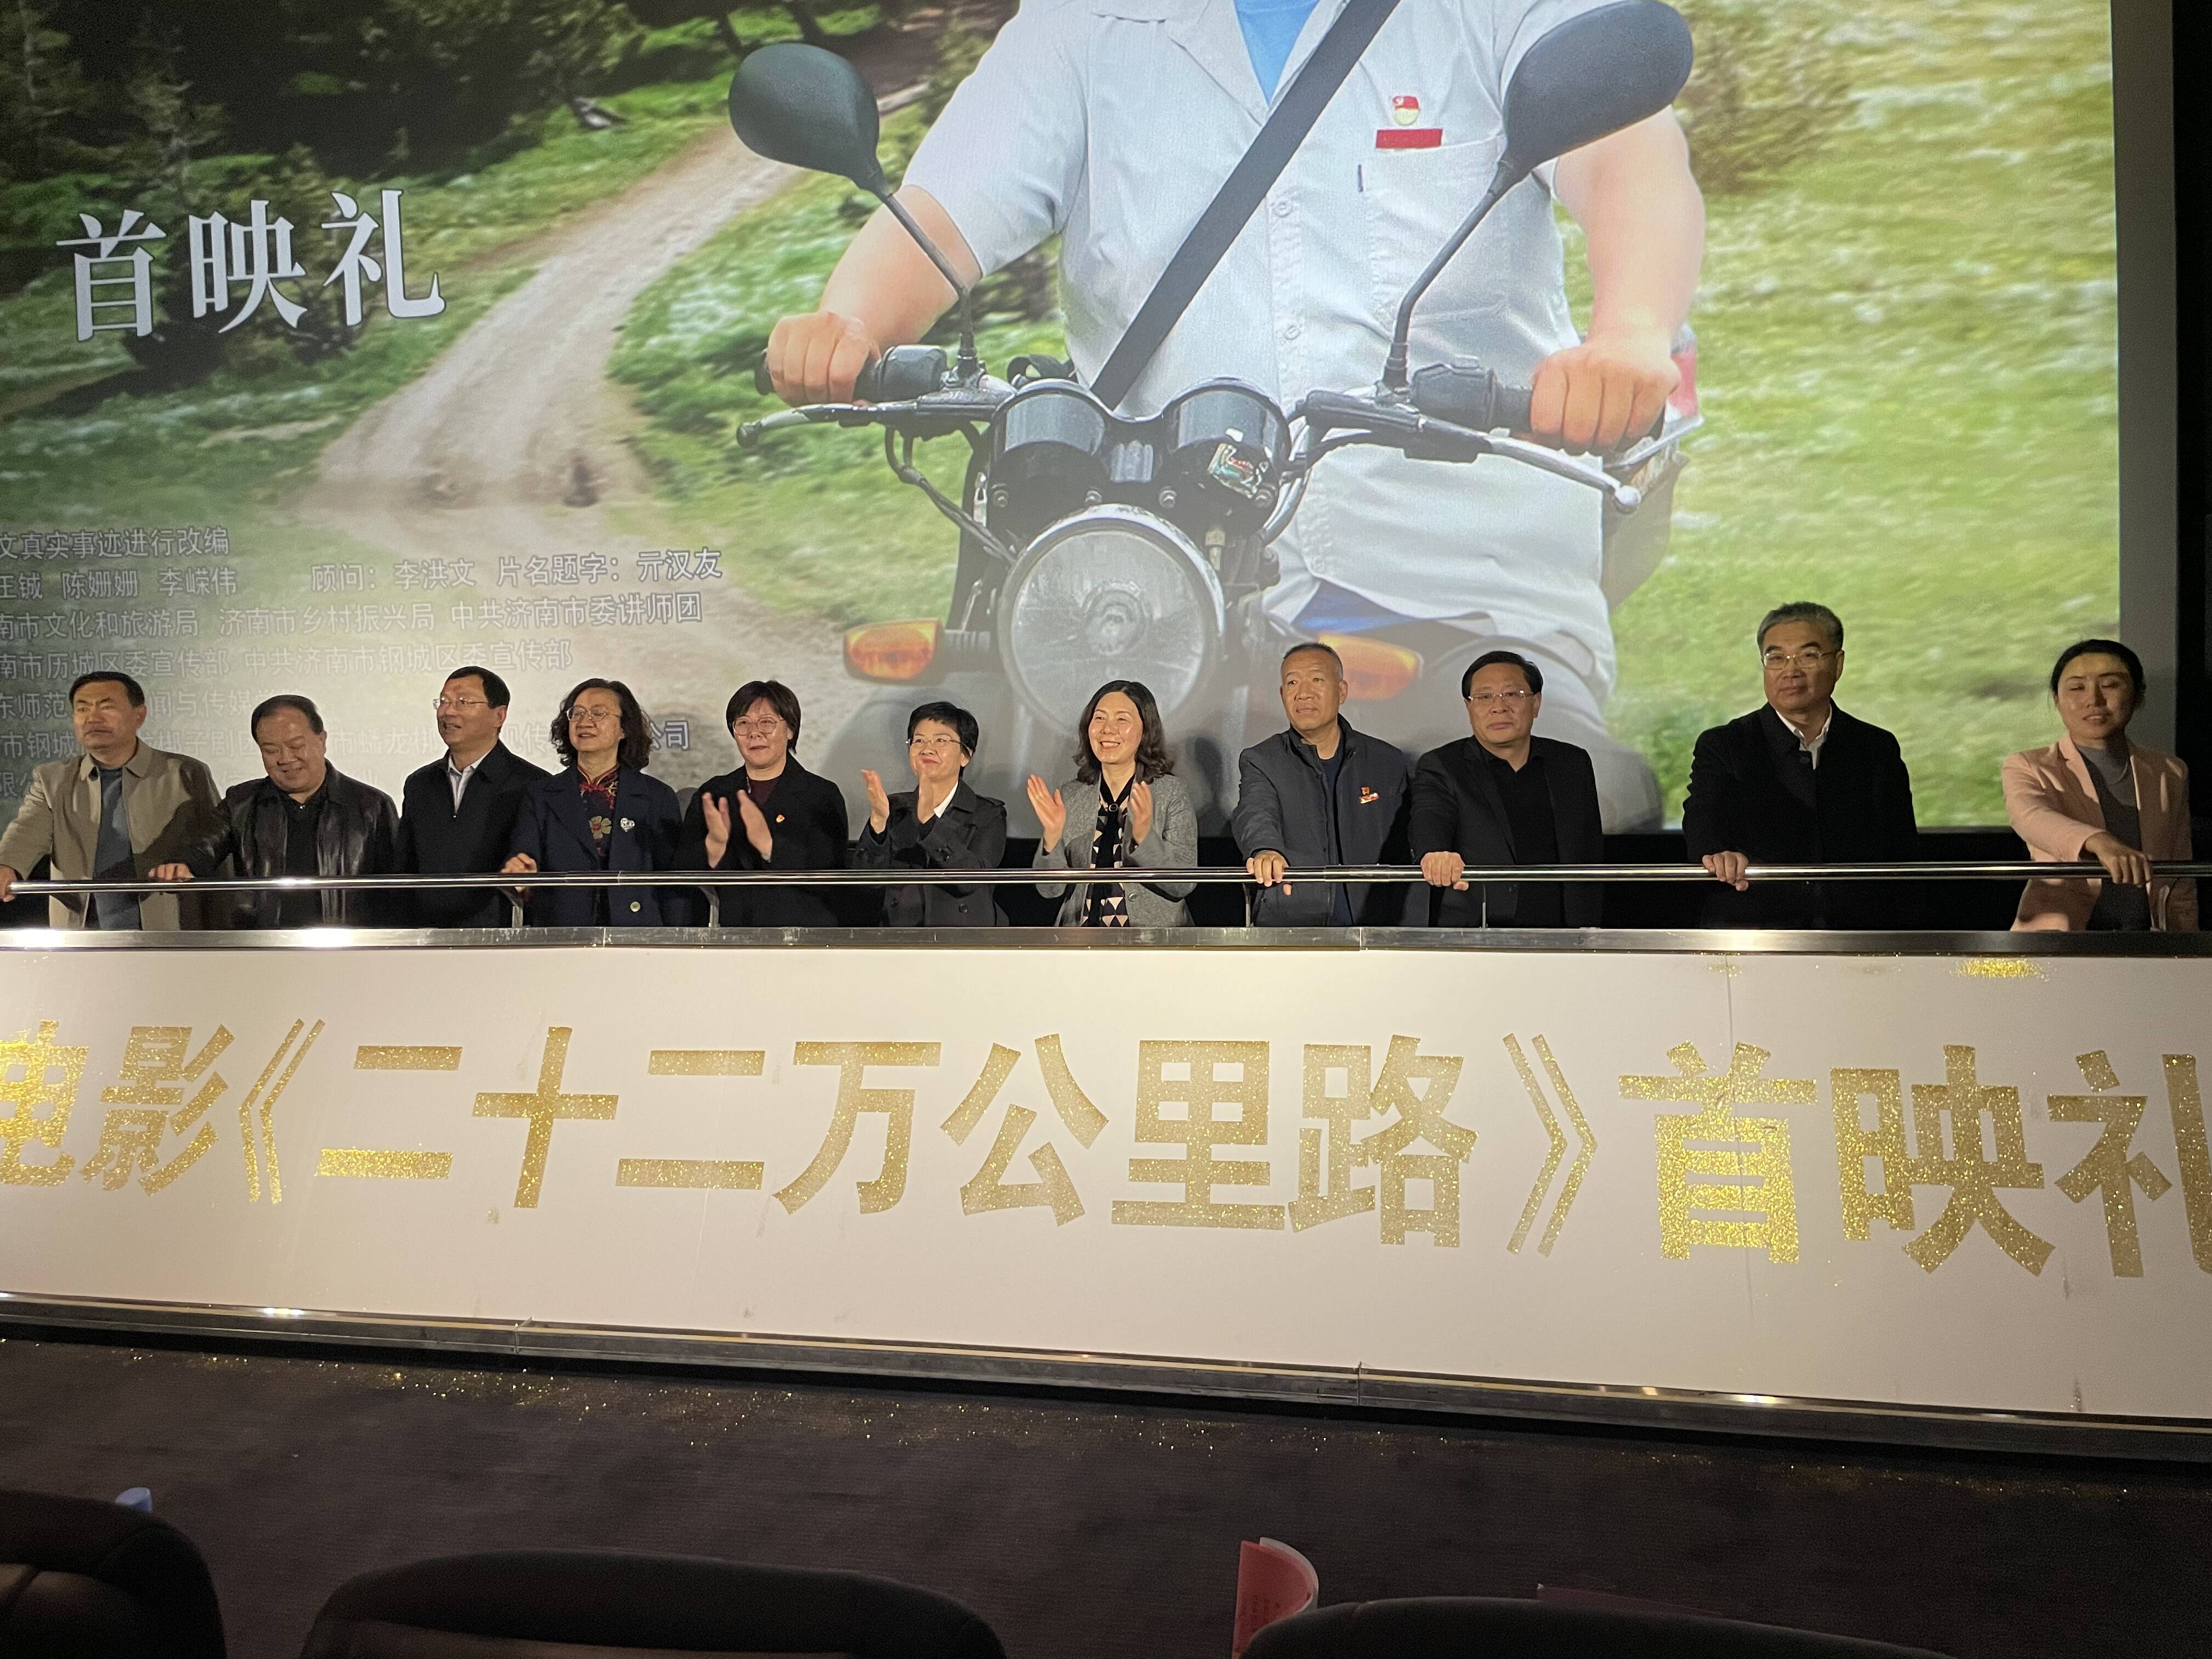 电影《二十二万公里路》首映礼在济南市历城区举行